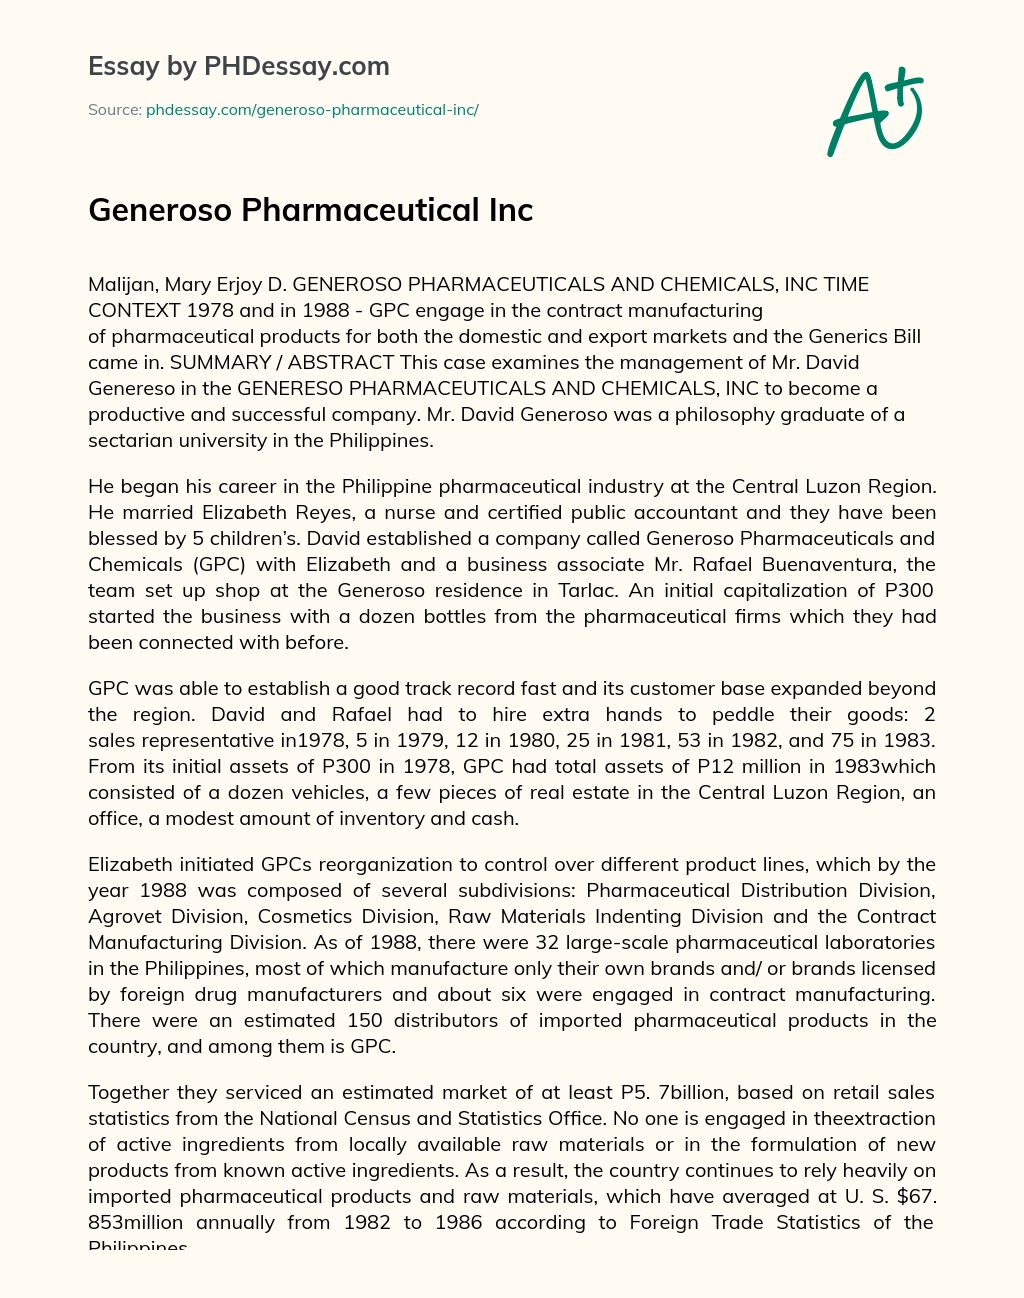 Generoso Pharmaceutical Inc essay